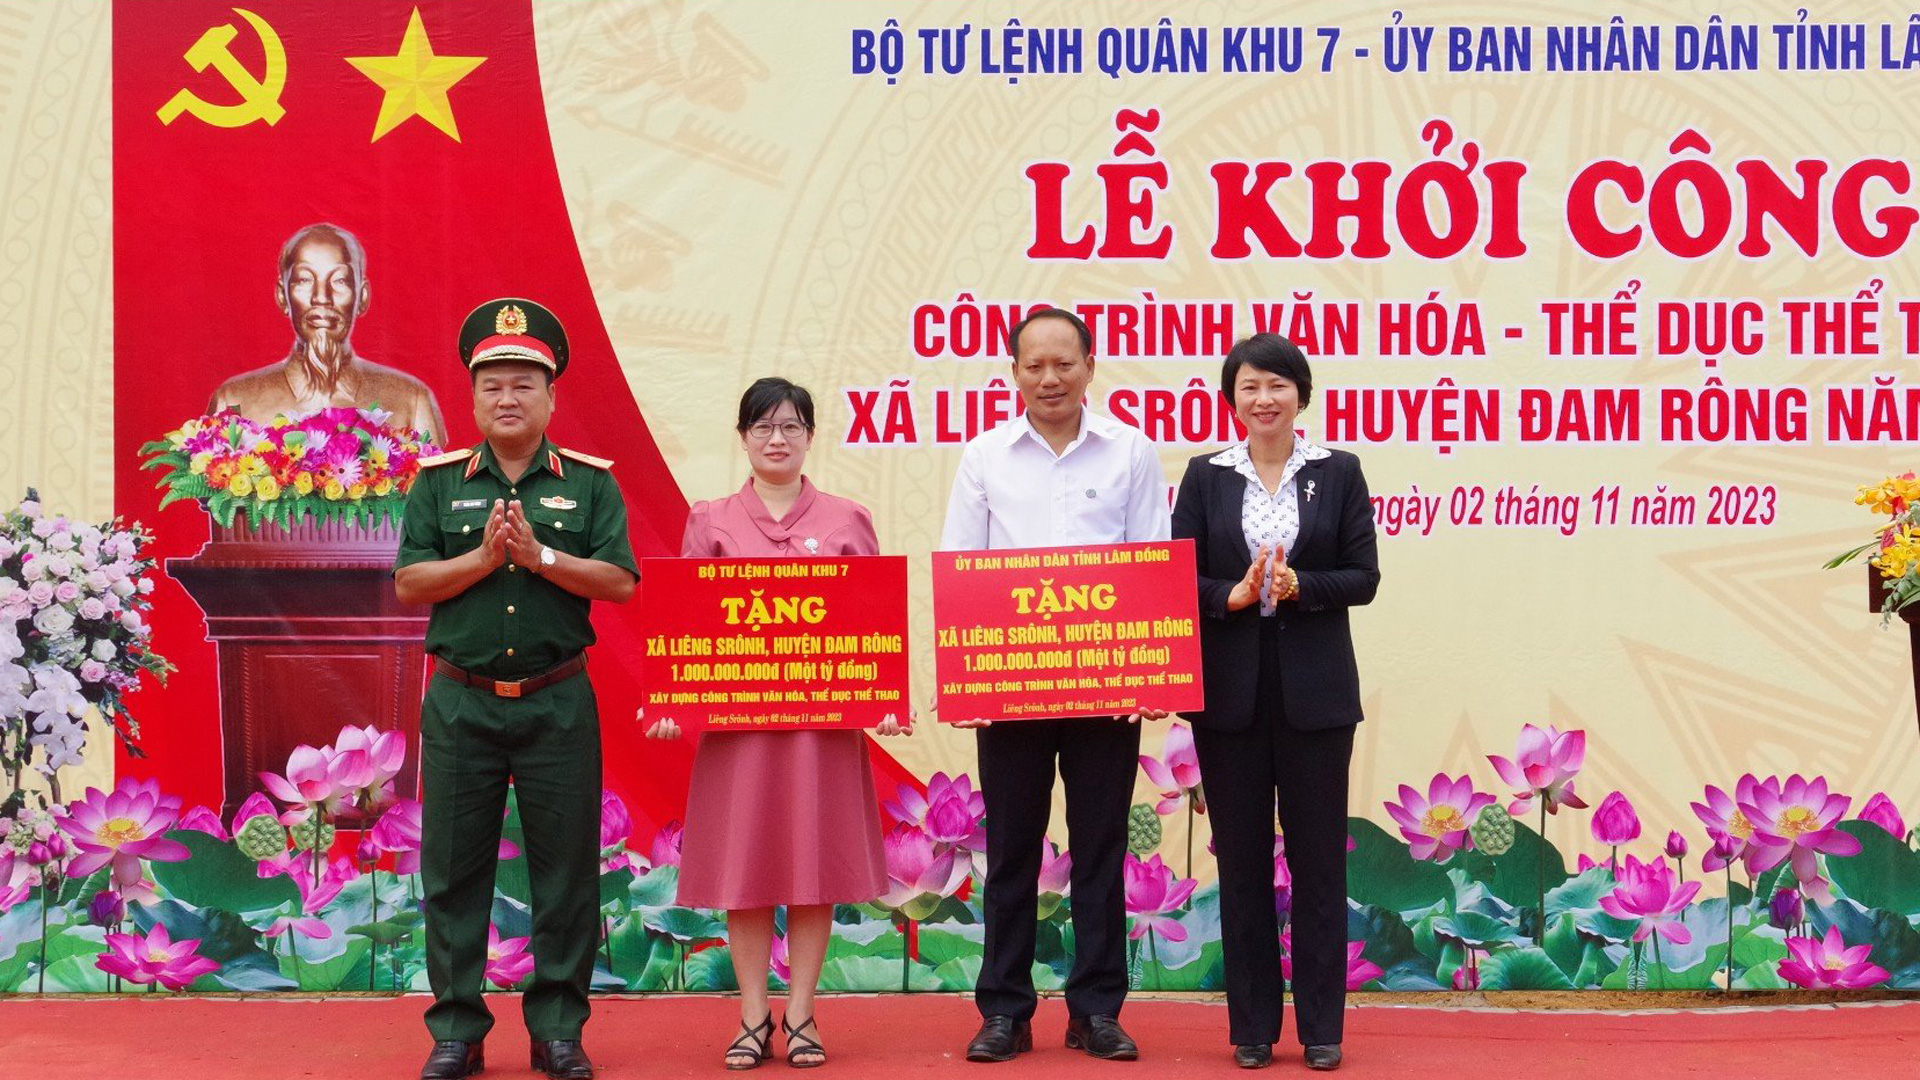 Đại diện Quân khu 7 và Tỉnh ủy Lâm Đồng trao biểu trưng hỗ trợ công trình văn hóa, thể dục thể thao tại Thôn 2, xã Liêng Srônh, huyện Đam Rông